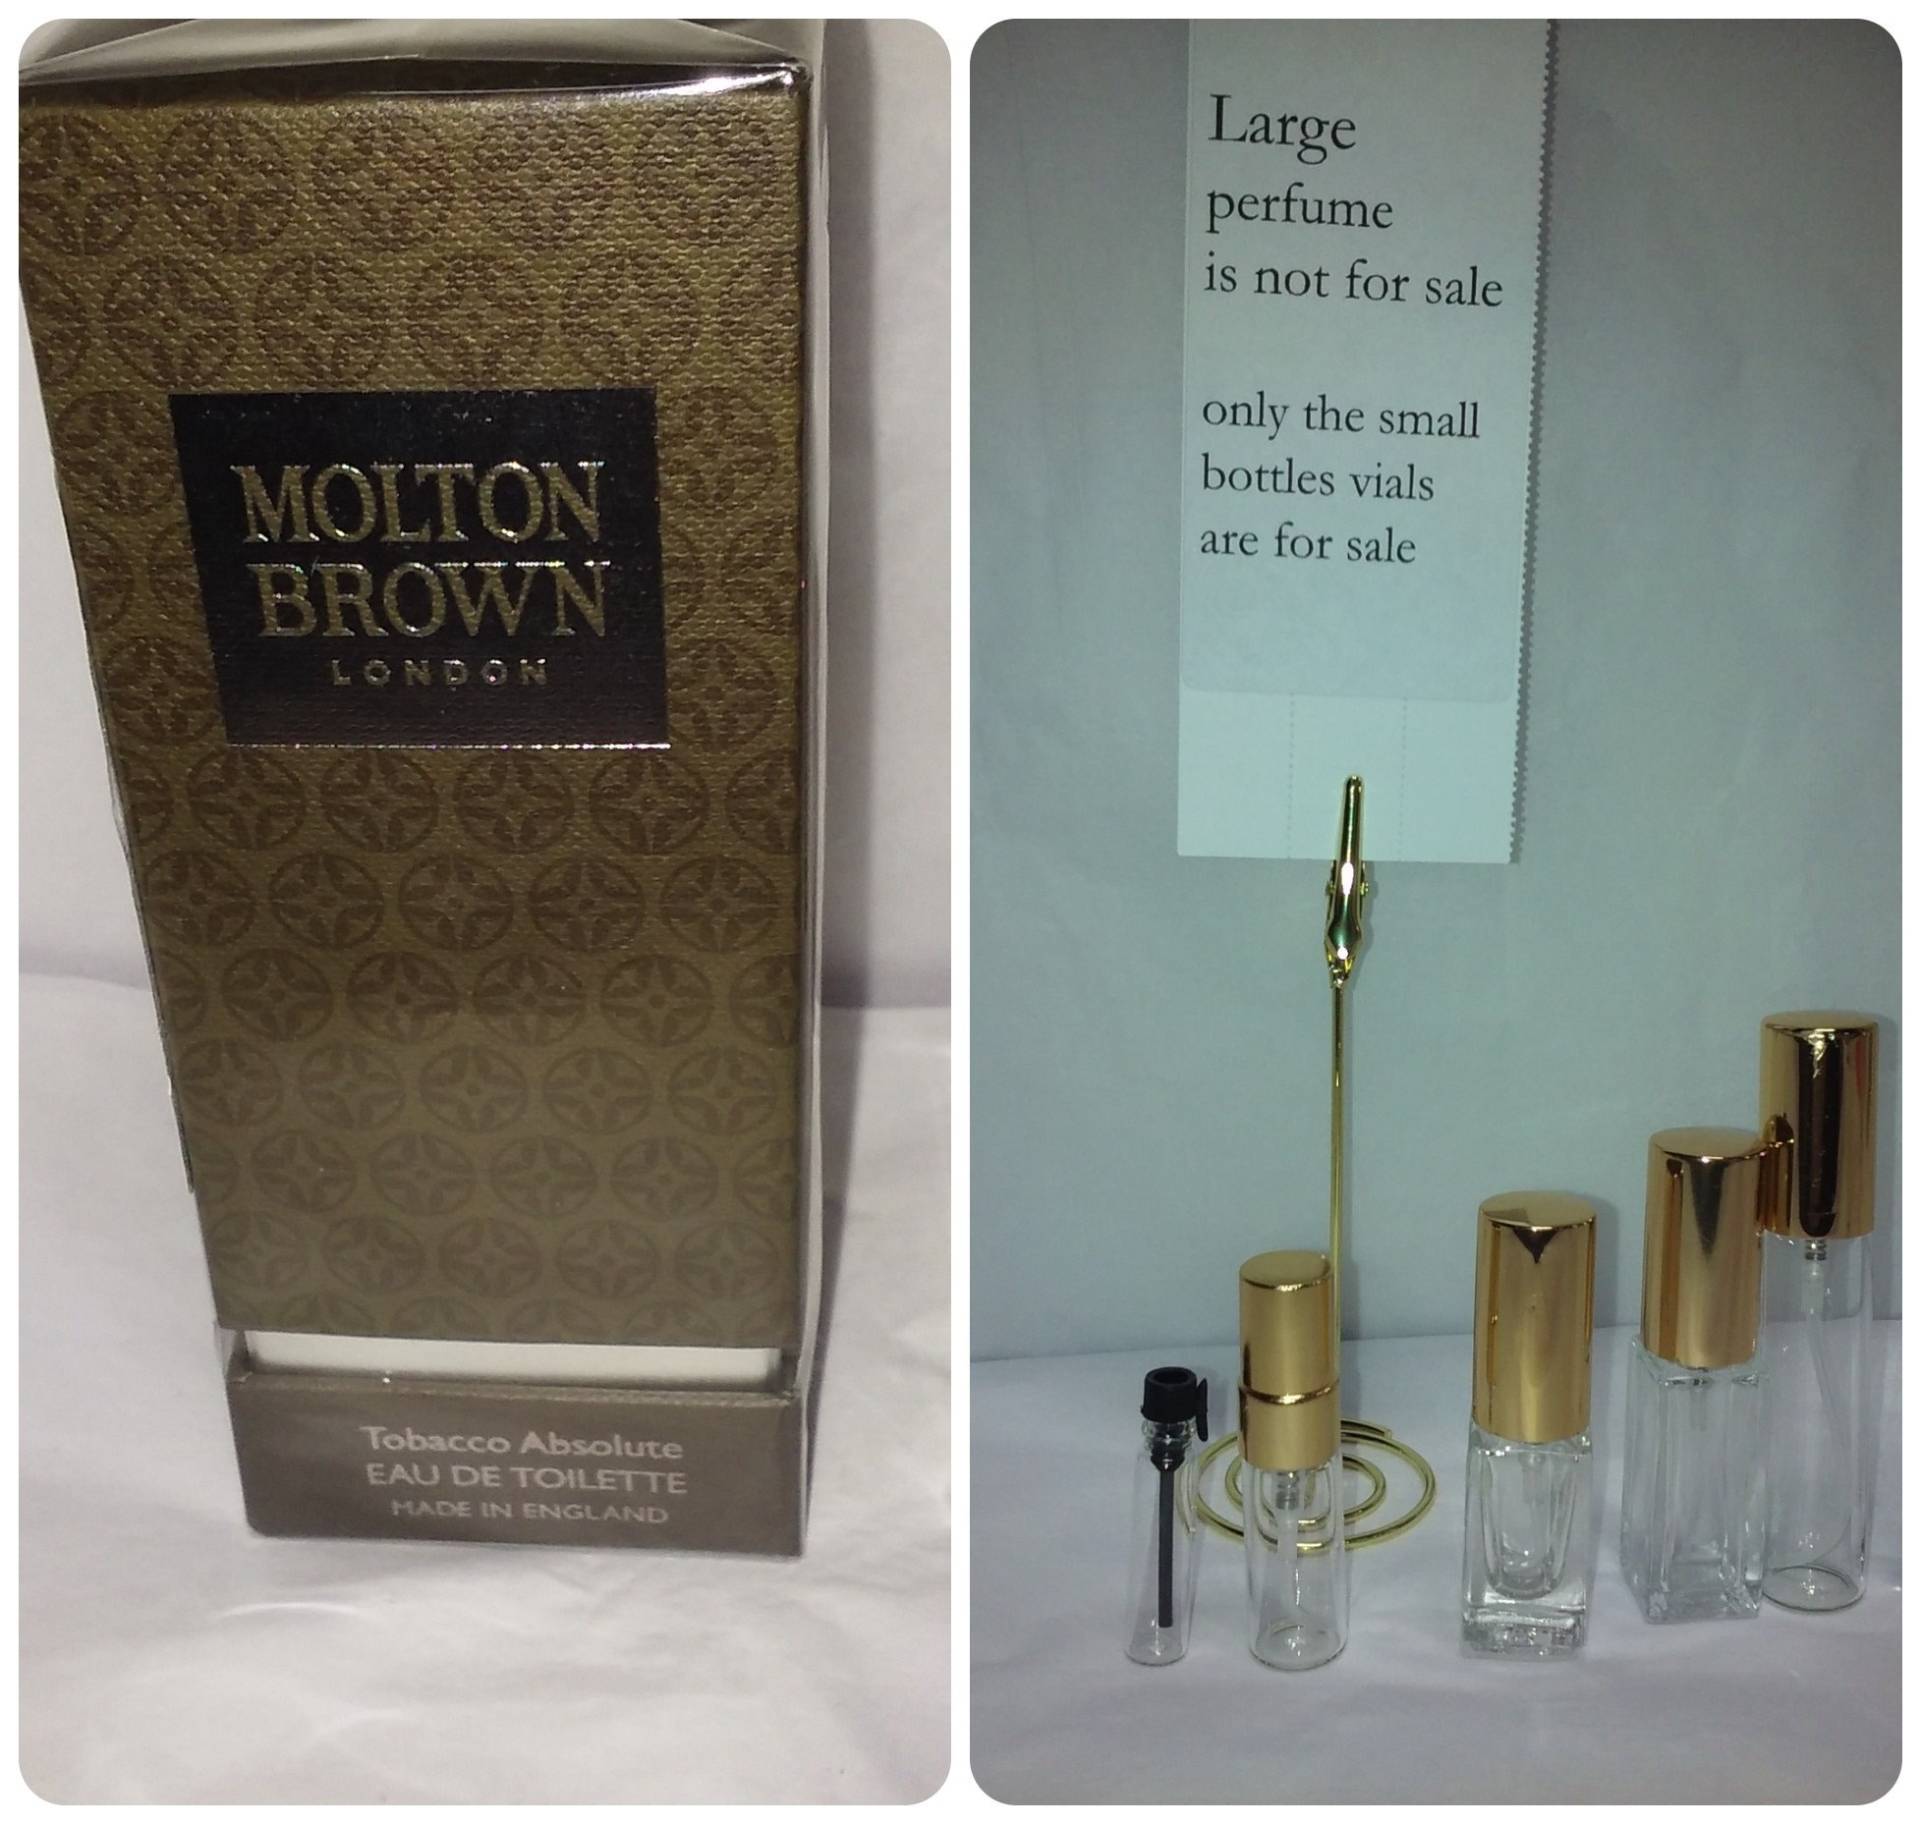 Molton Brown Tabak Absolute Eau Großes Parfüm Ist Nicht Enthalten von somersetantiques1